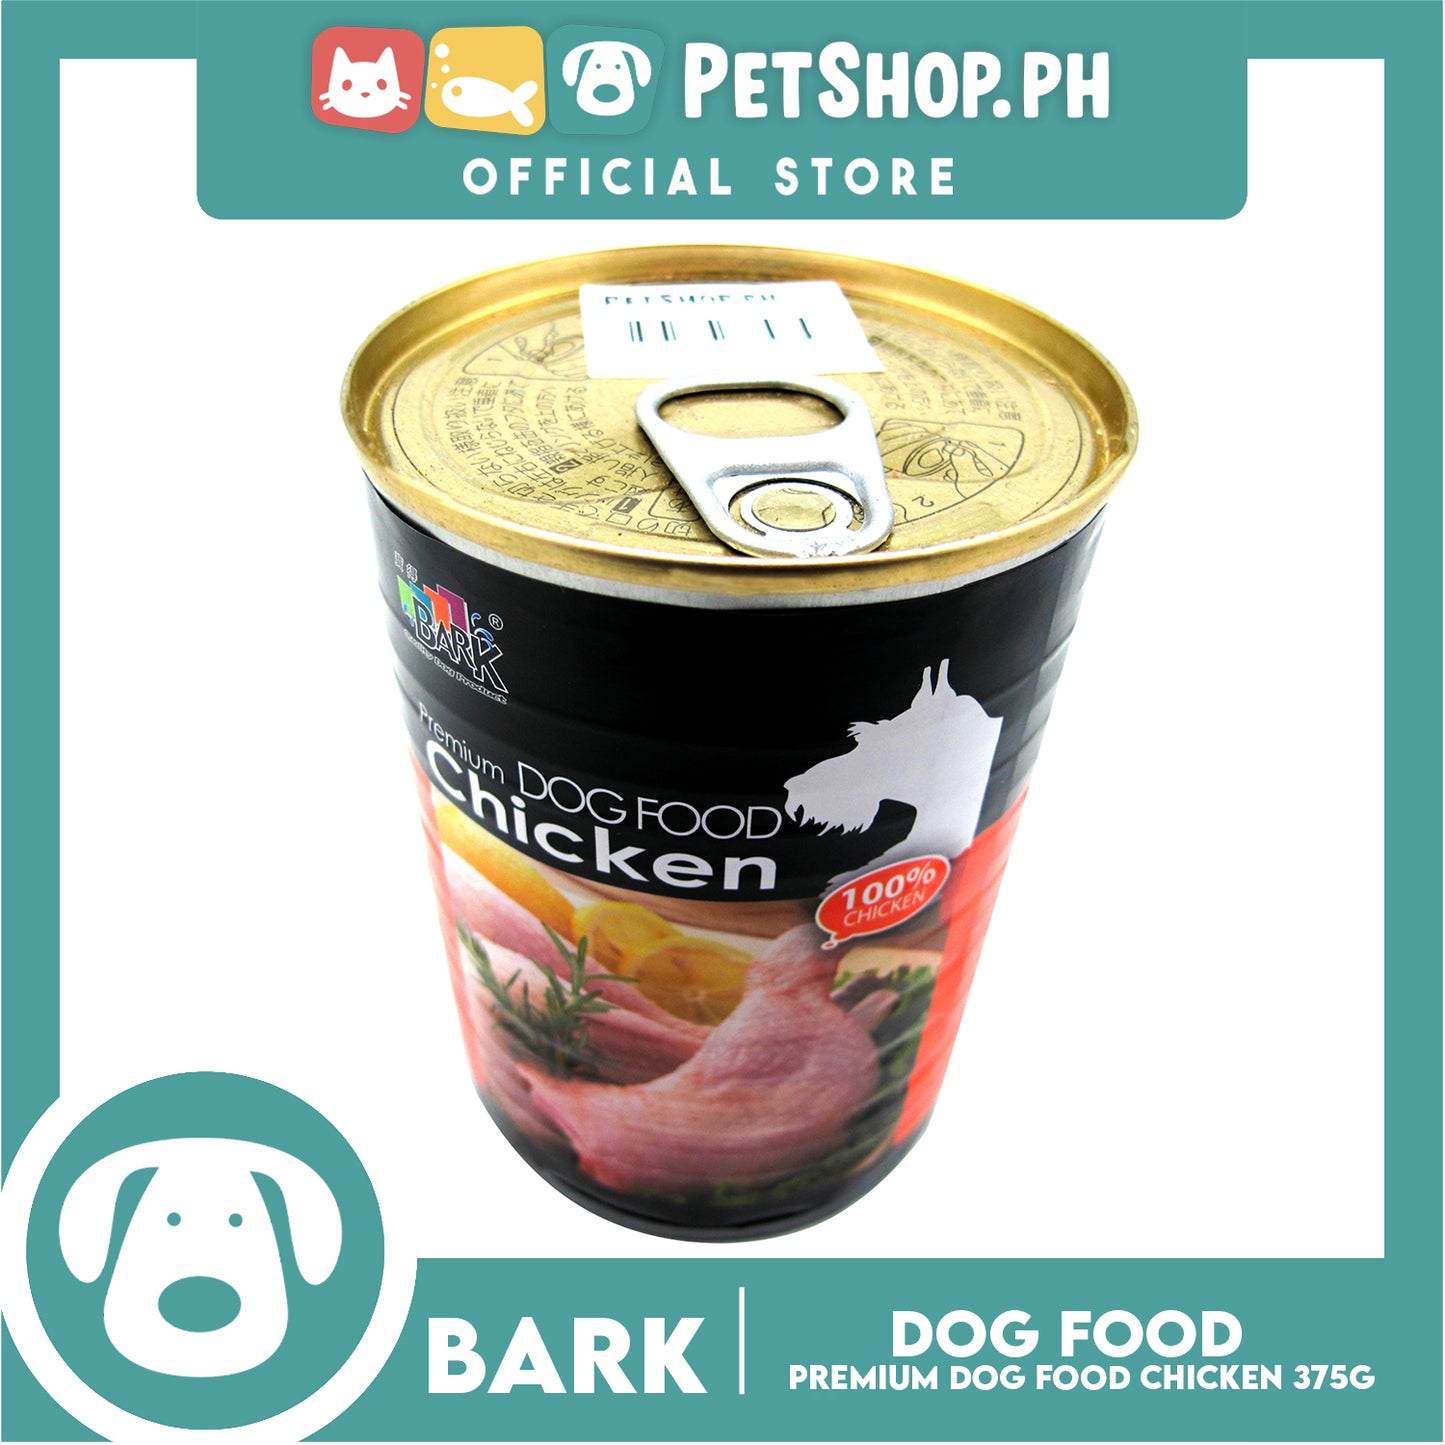 Bark Premium Dog Food Ckicken 375g